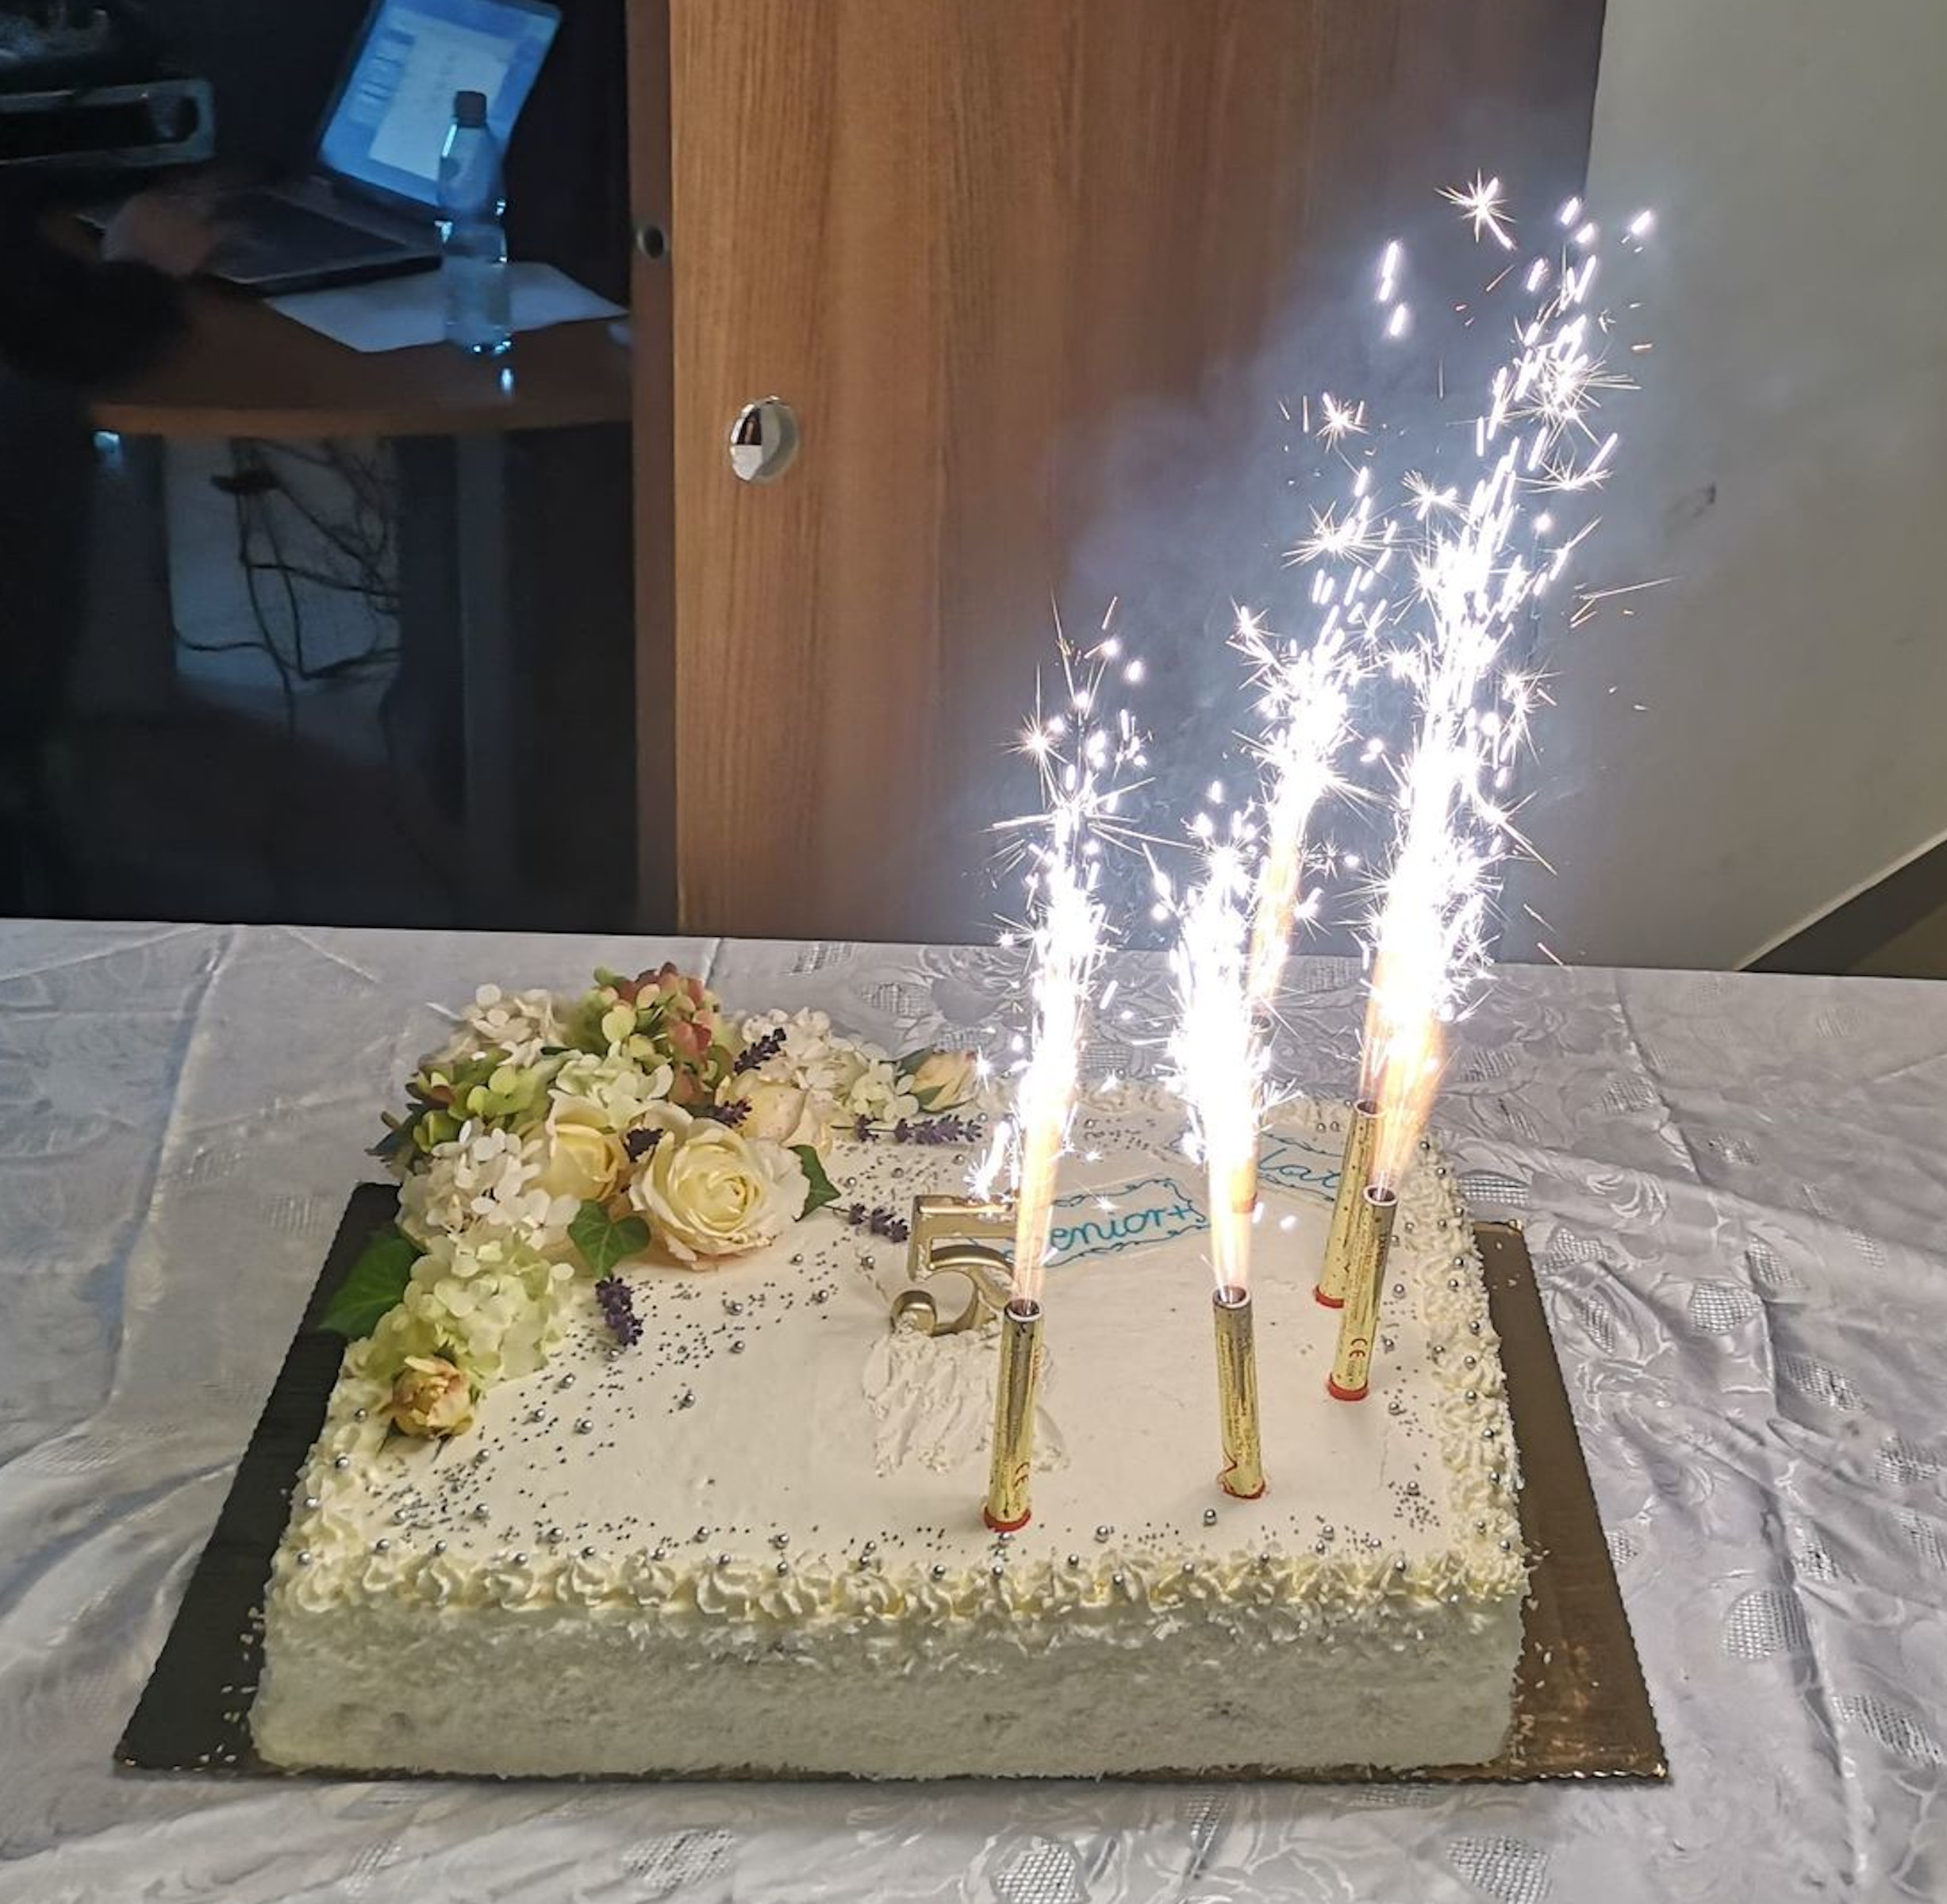 Uroczyste obchody 5 urodzin Kulbu "Senior+" w Woli Karczewskiej. Urodzinowy tort